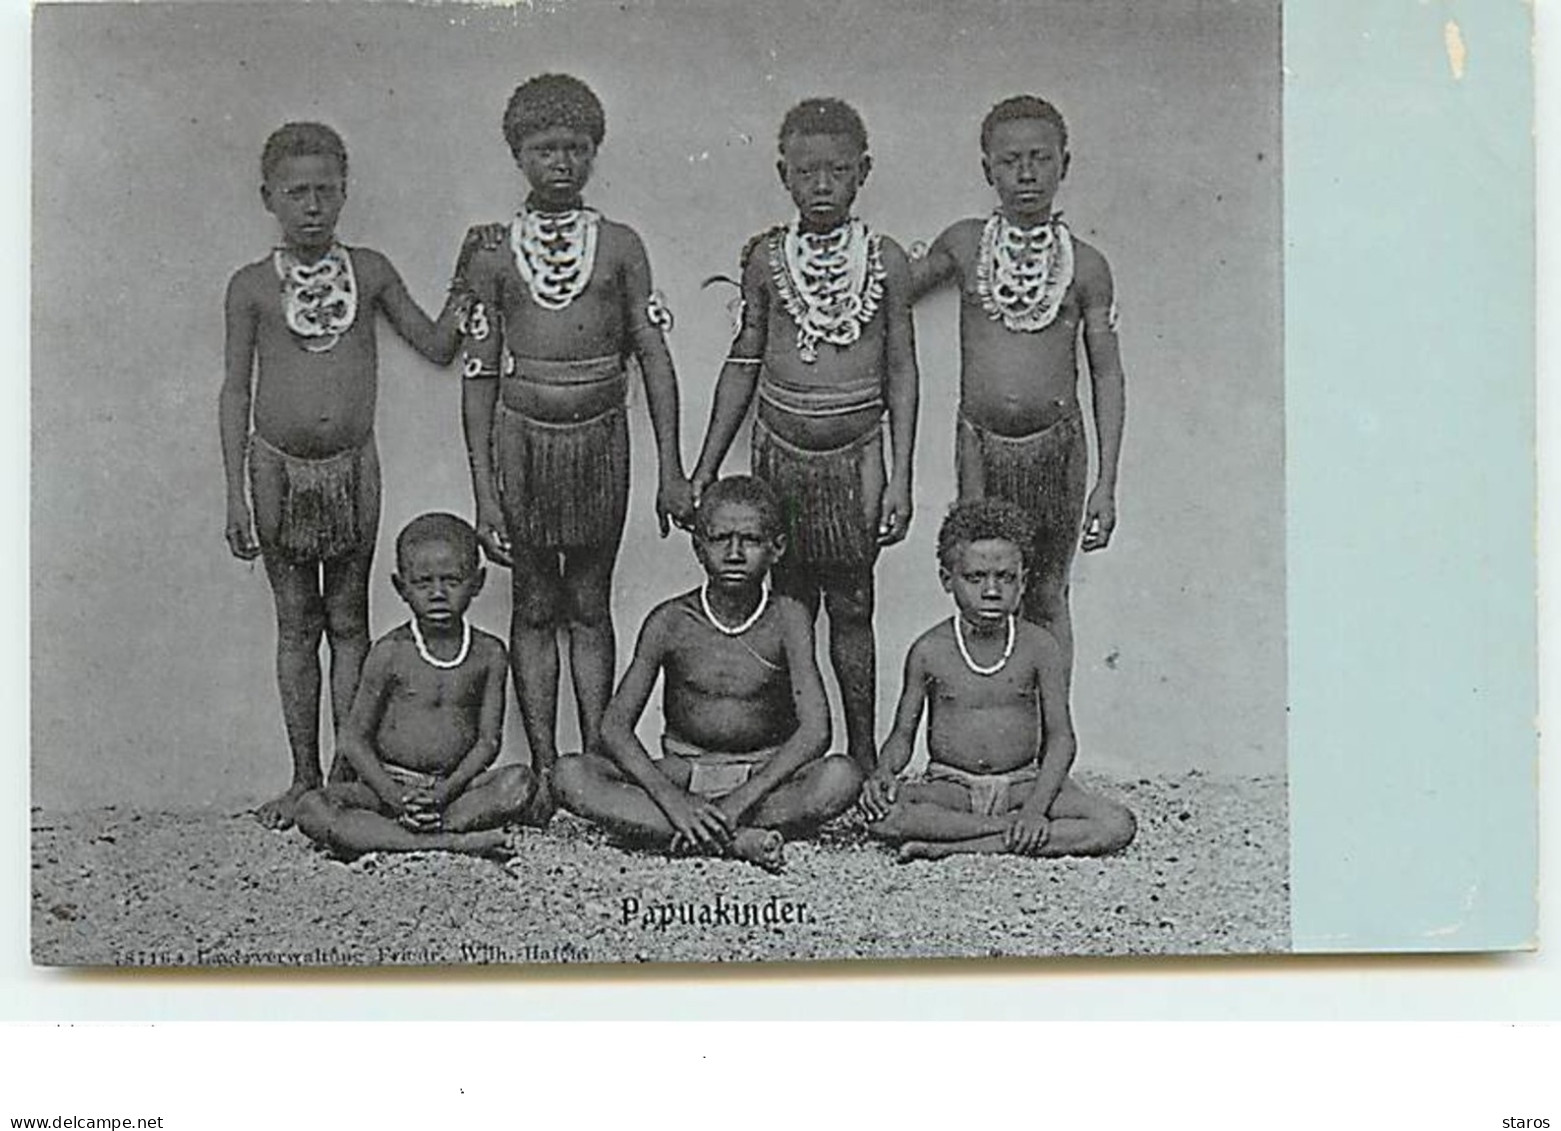 Papouasie - Papuakinder - Enfants - Papua New Guinea